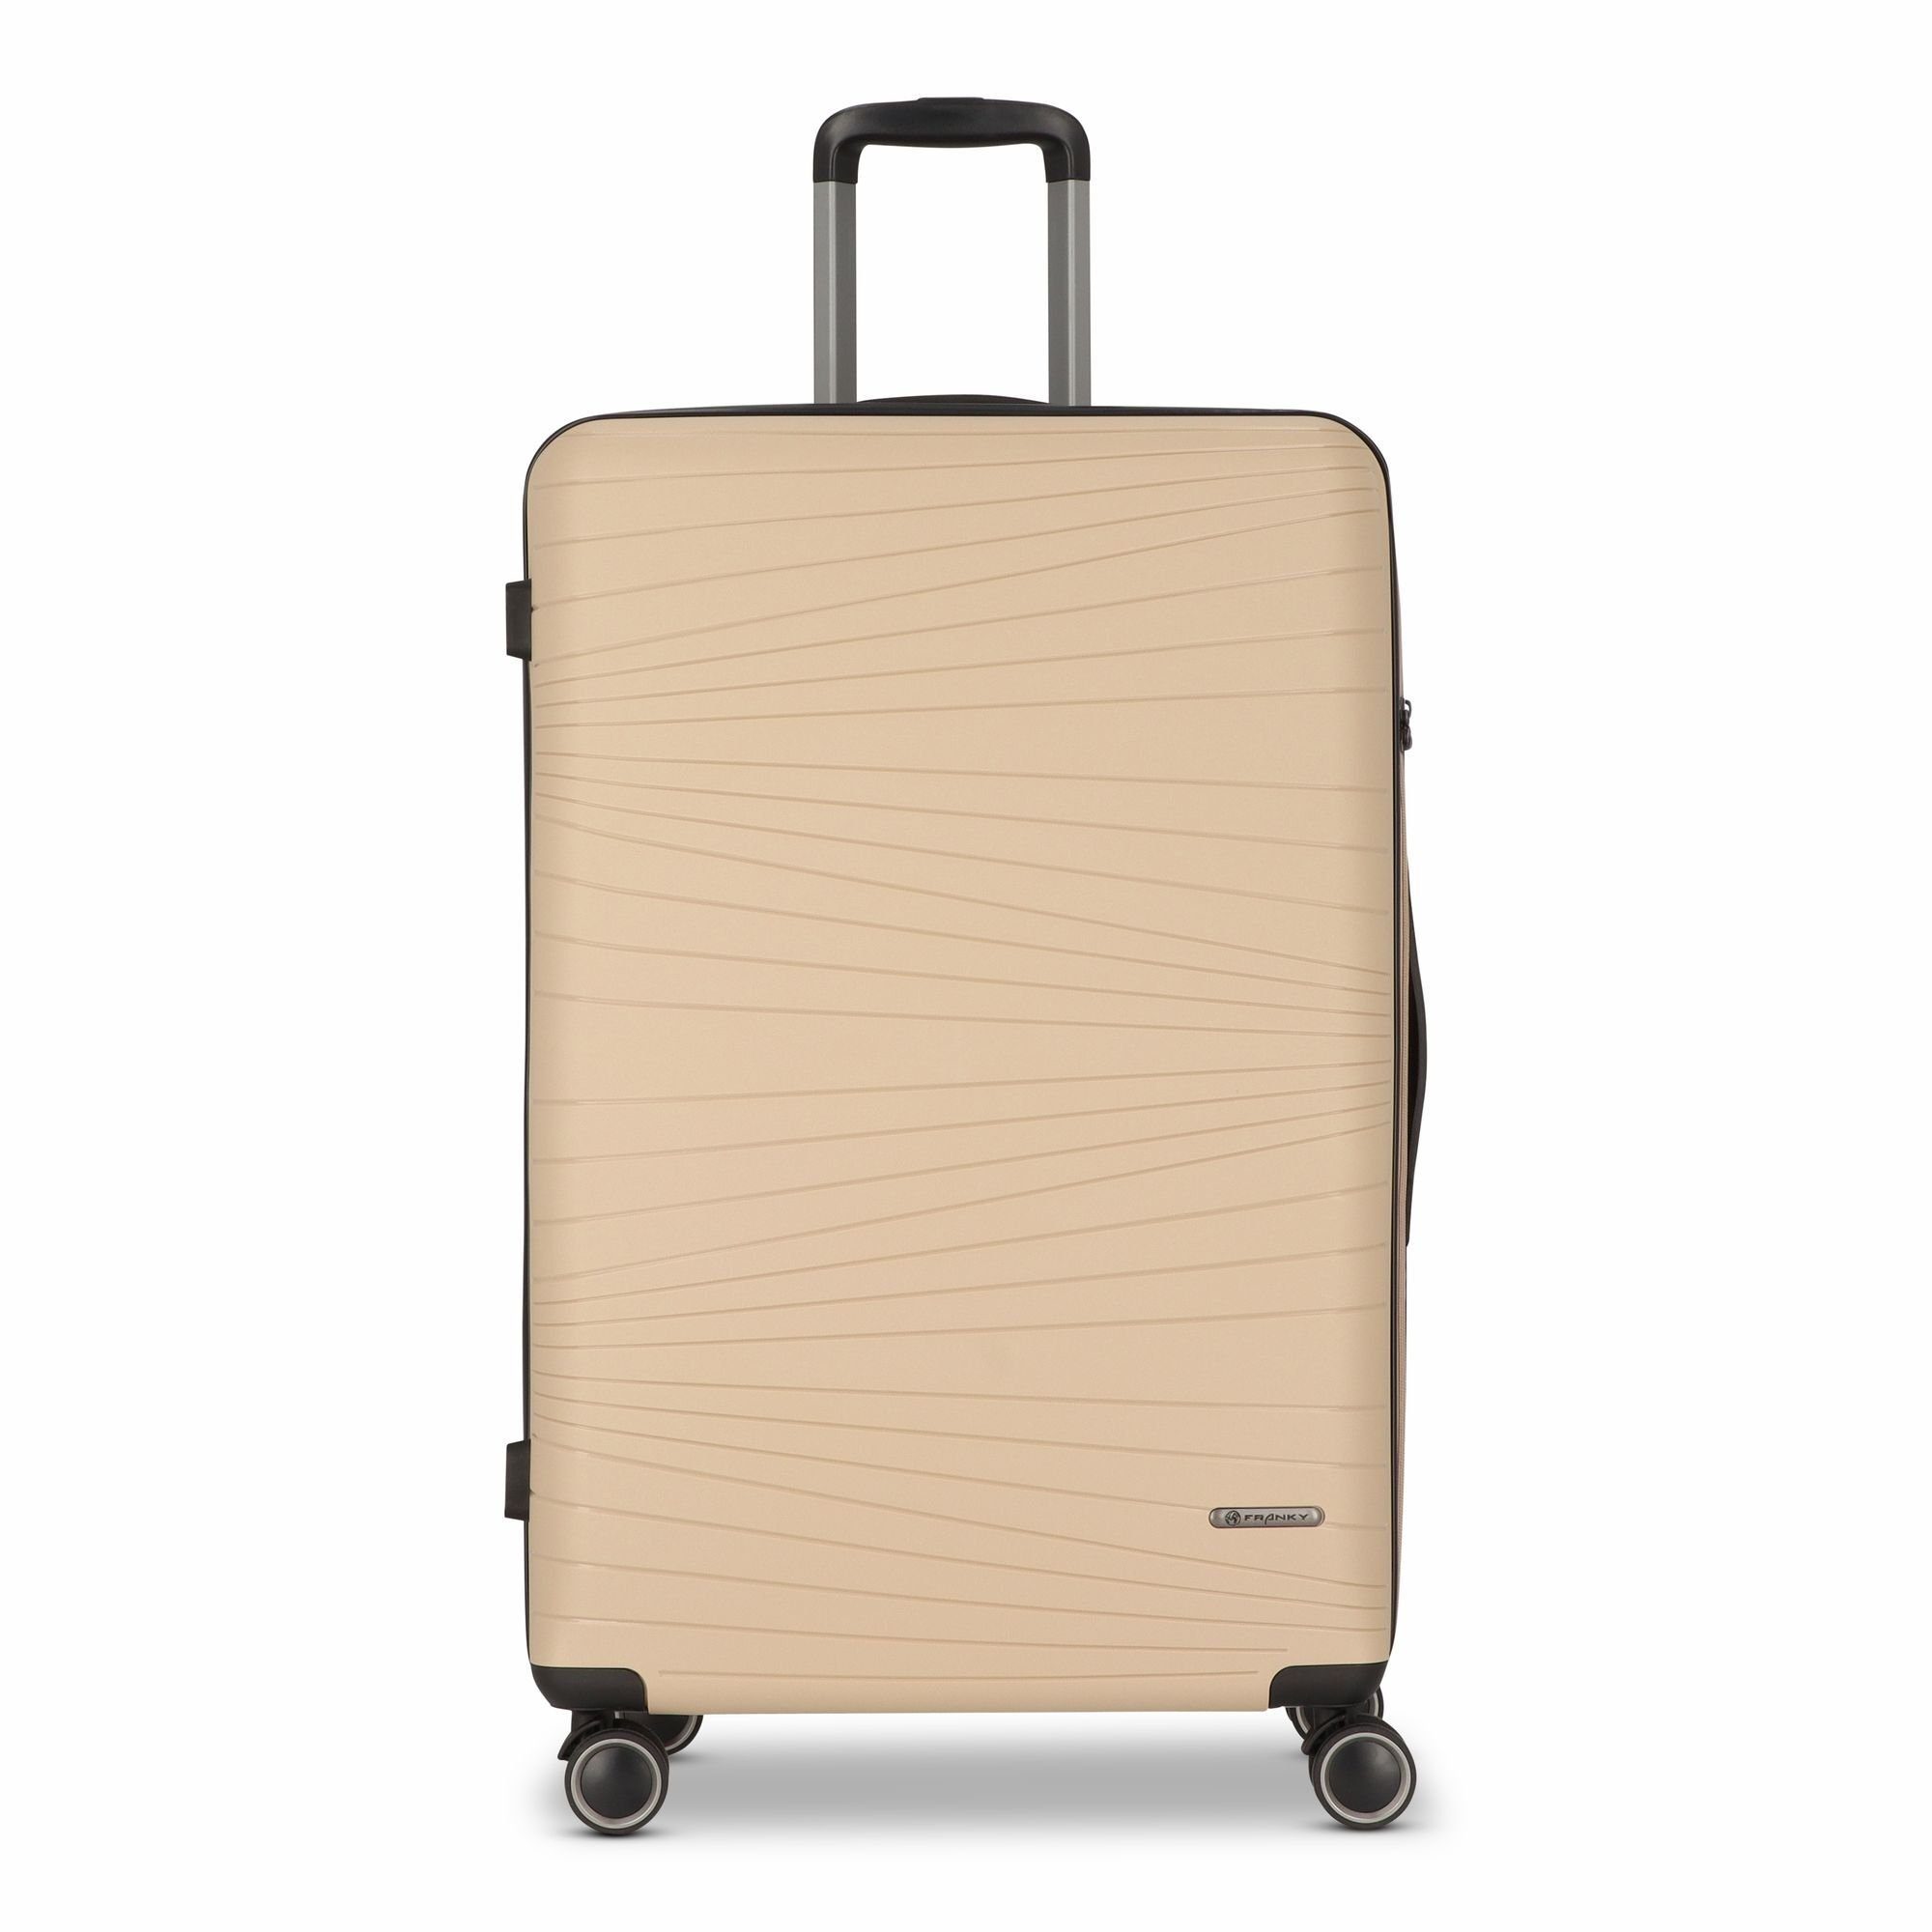 Beige Koffer online kaufen | OTTO » Beige Reisekoffer